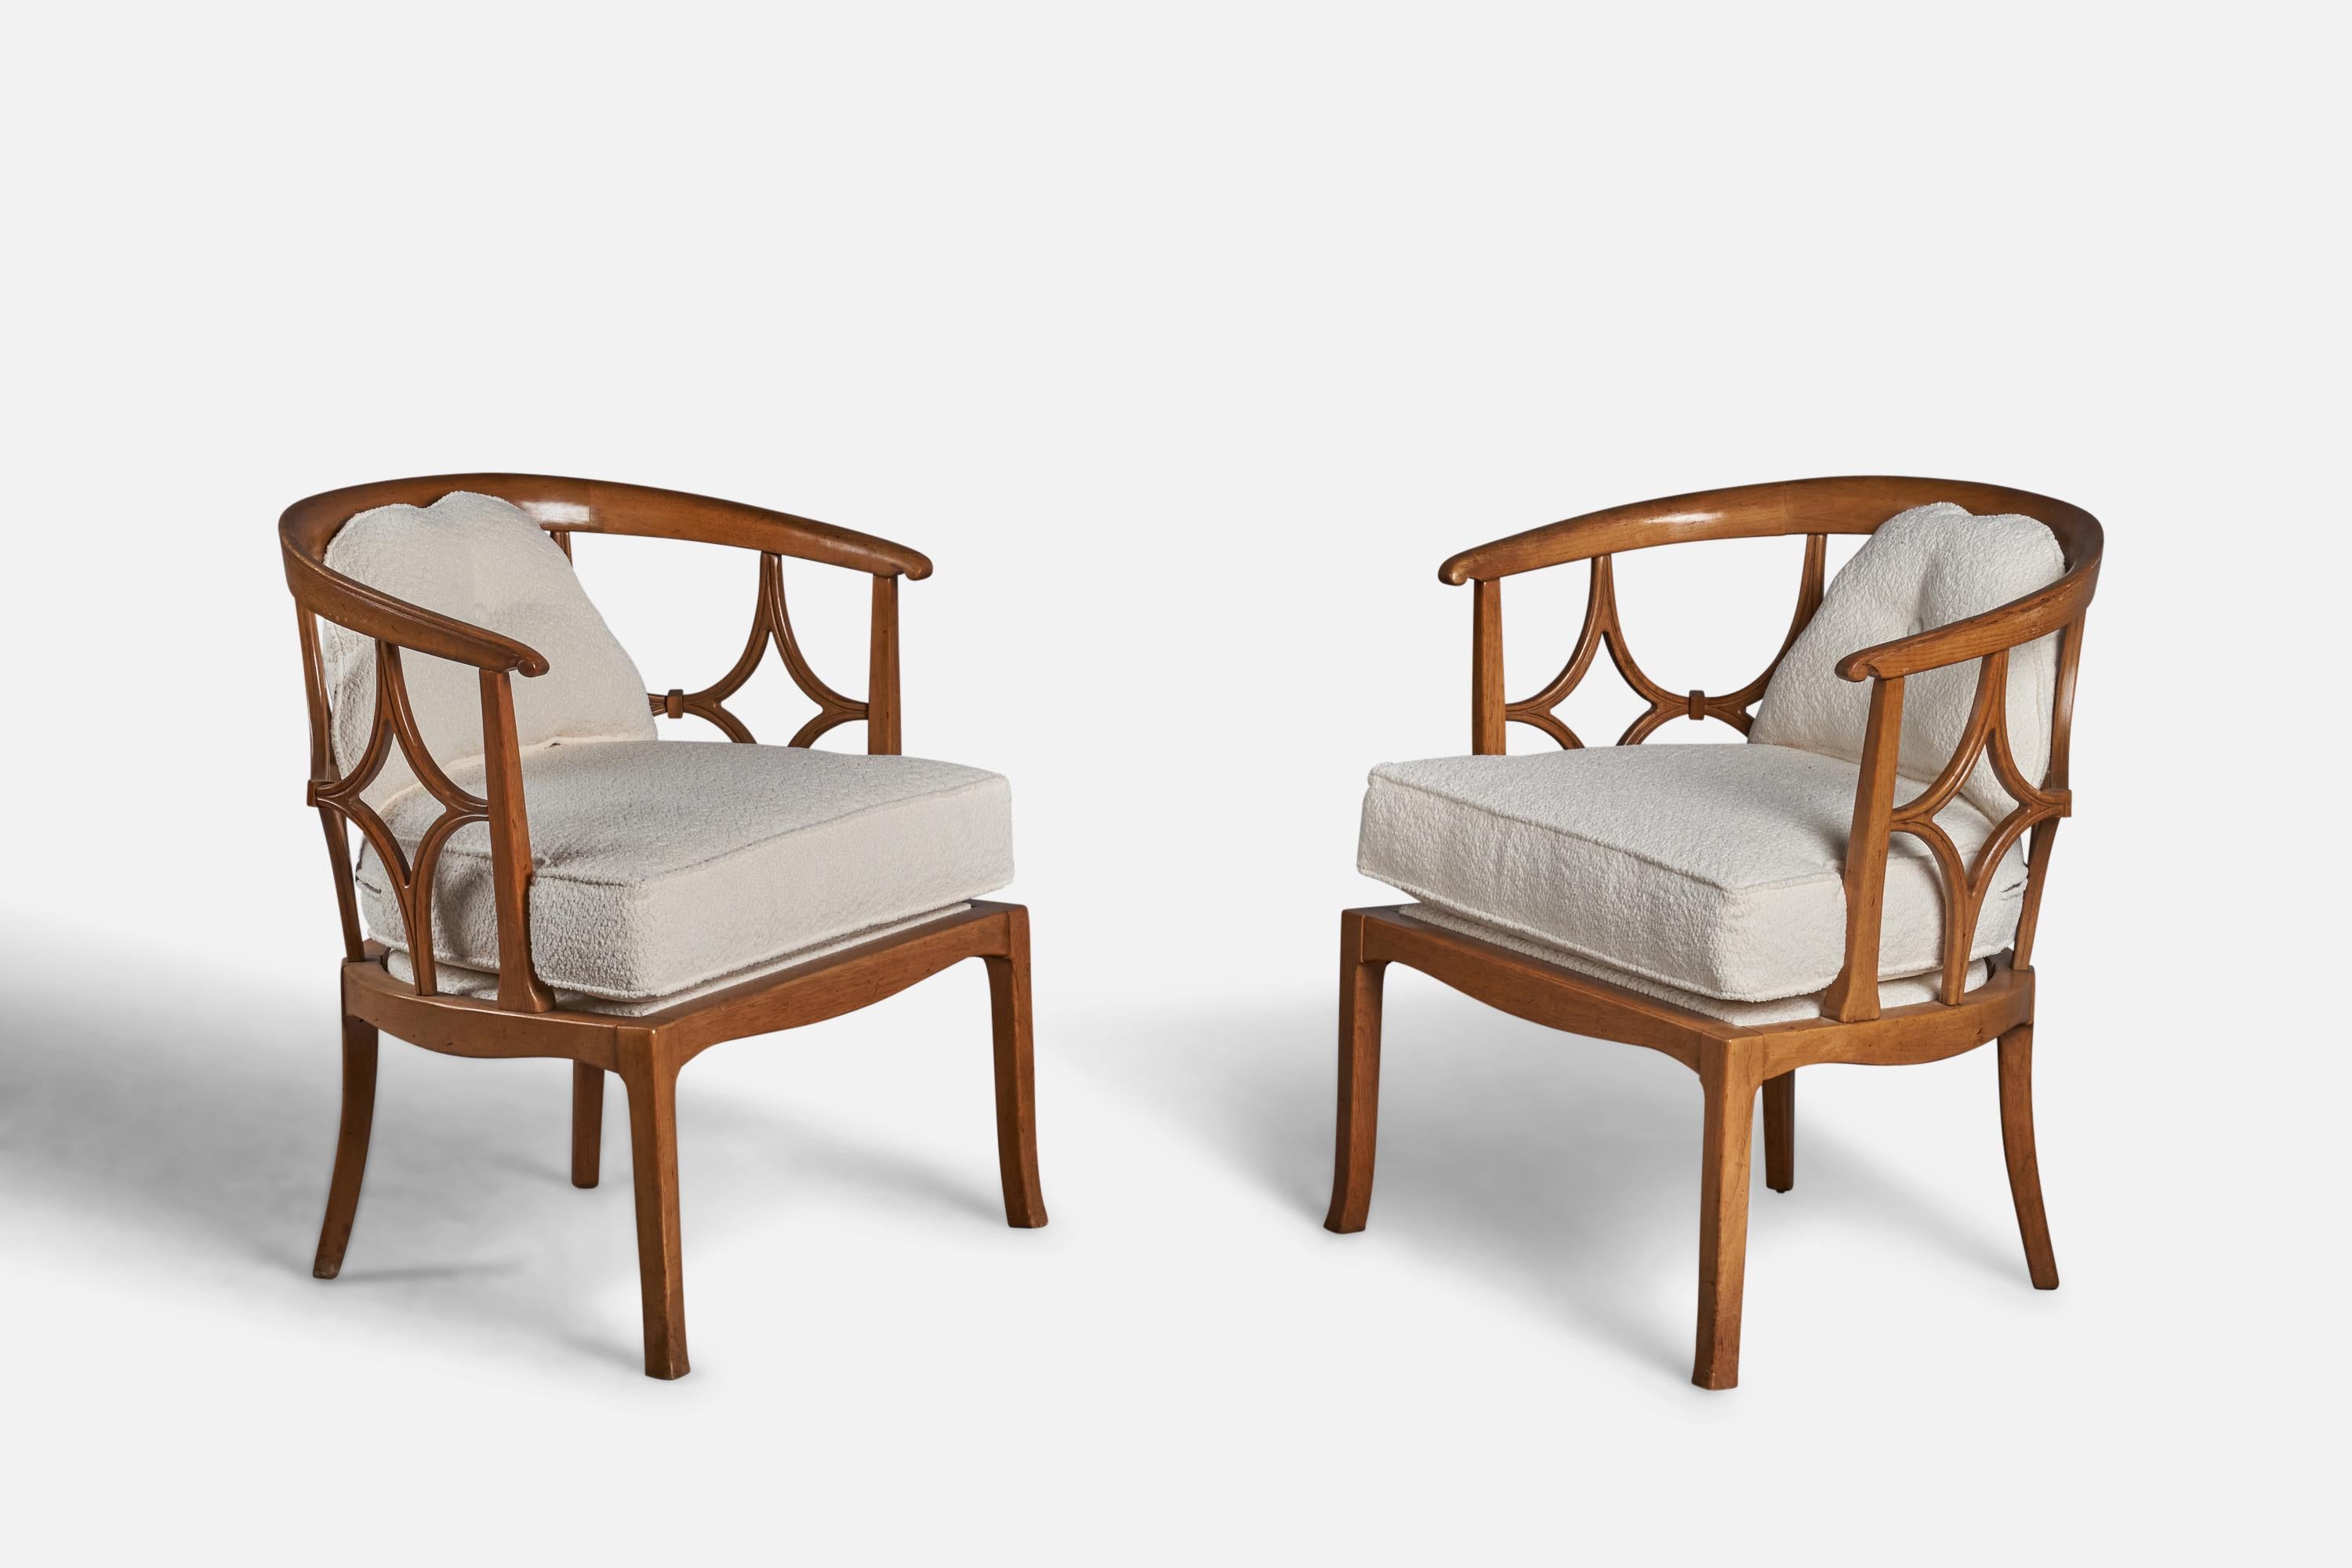 Paire de chaises longues en chêne teinté et tissu bouclé blanc, conçues et produites aux États-Unis, vers les années 1940.
Hauteur d'assise 19
Remeublé dans une toute nouvelle tapisserie en bouclette blanche.